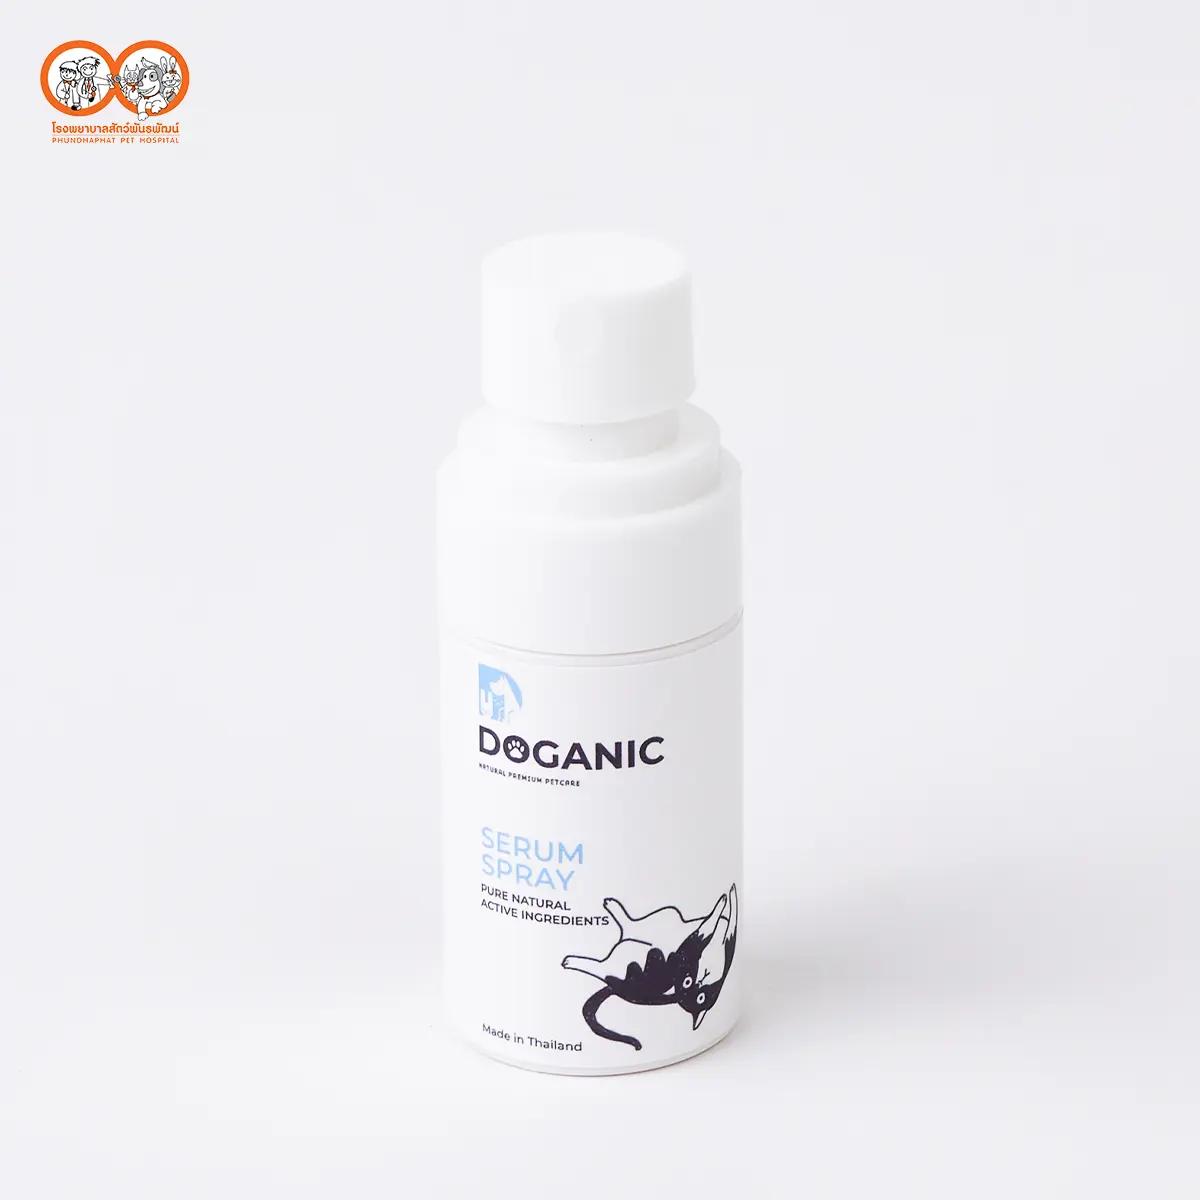 Doganic herbal spray (35 ml)